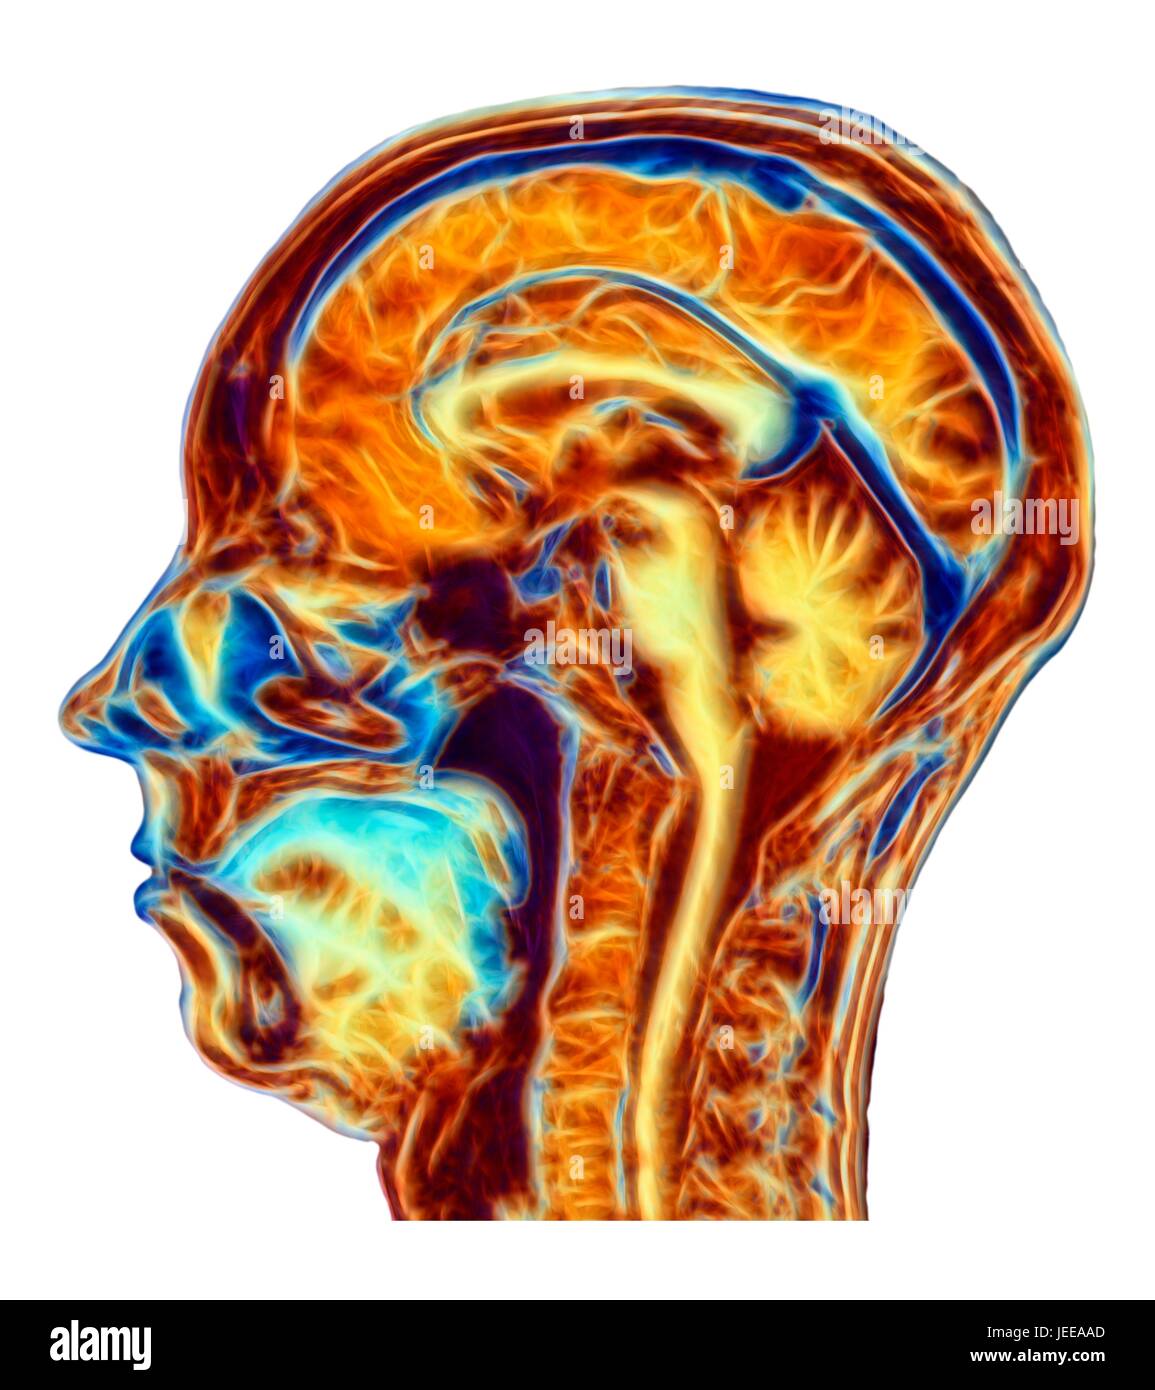 Computer verbessert, falsche Farbe Magnetic Resonance Bild (MRT) eine Mitte sagittale Abschnitts durch den Kopf einer normalen 46 jährige Frau, zeigt Strukturen im Gehirn, Wirbelsäule & Gesichtsbehandlung Gewebe. Profilierte verfügt über den wichtigsten Teil des Gehirns die gewundene Oberfläche der Hirnrinde, Corpus Callosum, Pons & Medulla, Strukturen des Hirnstamms, die kontinuierlich mit dem Rückenmark sind. Das Kleinhirn, das Zentrum der Balance & Koordination, liegt auf der rechten Seite der Hirnstamm. Stockfoto